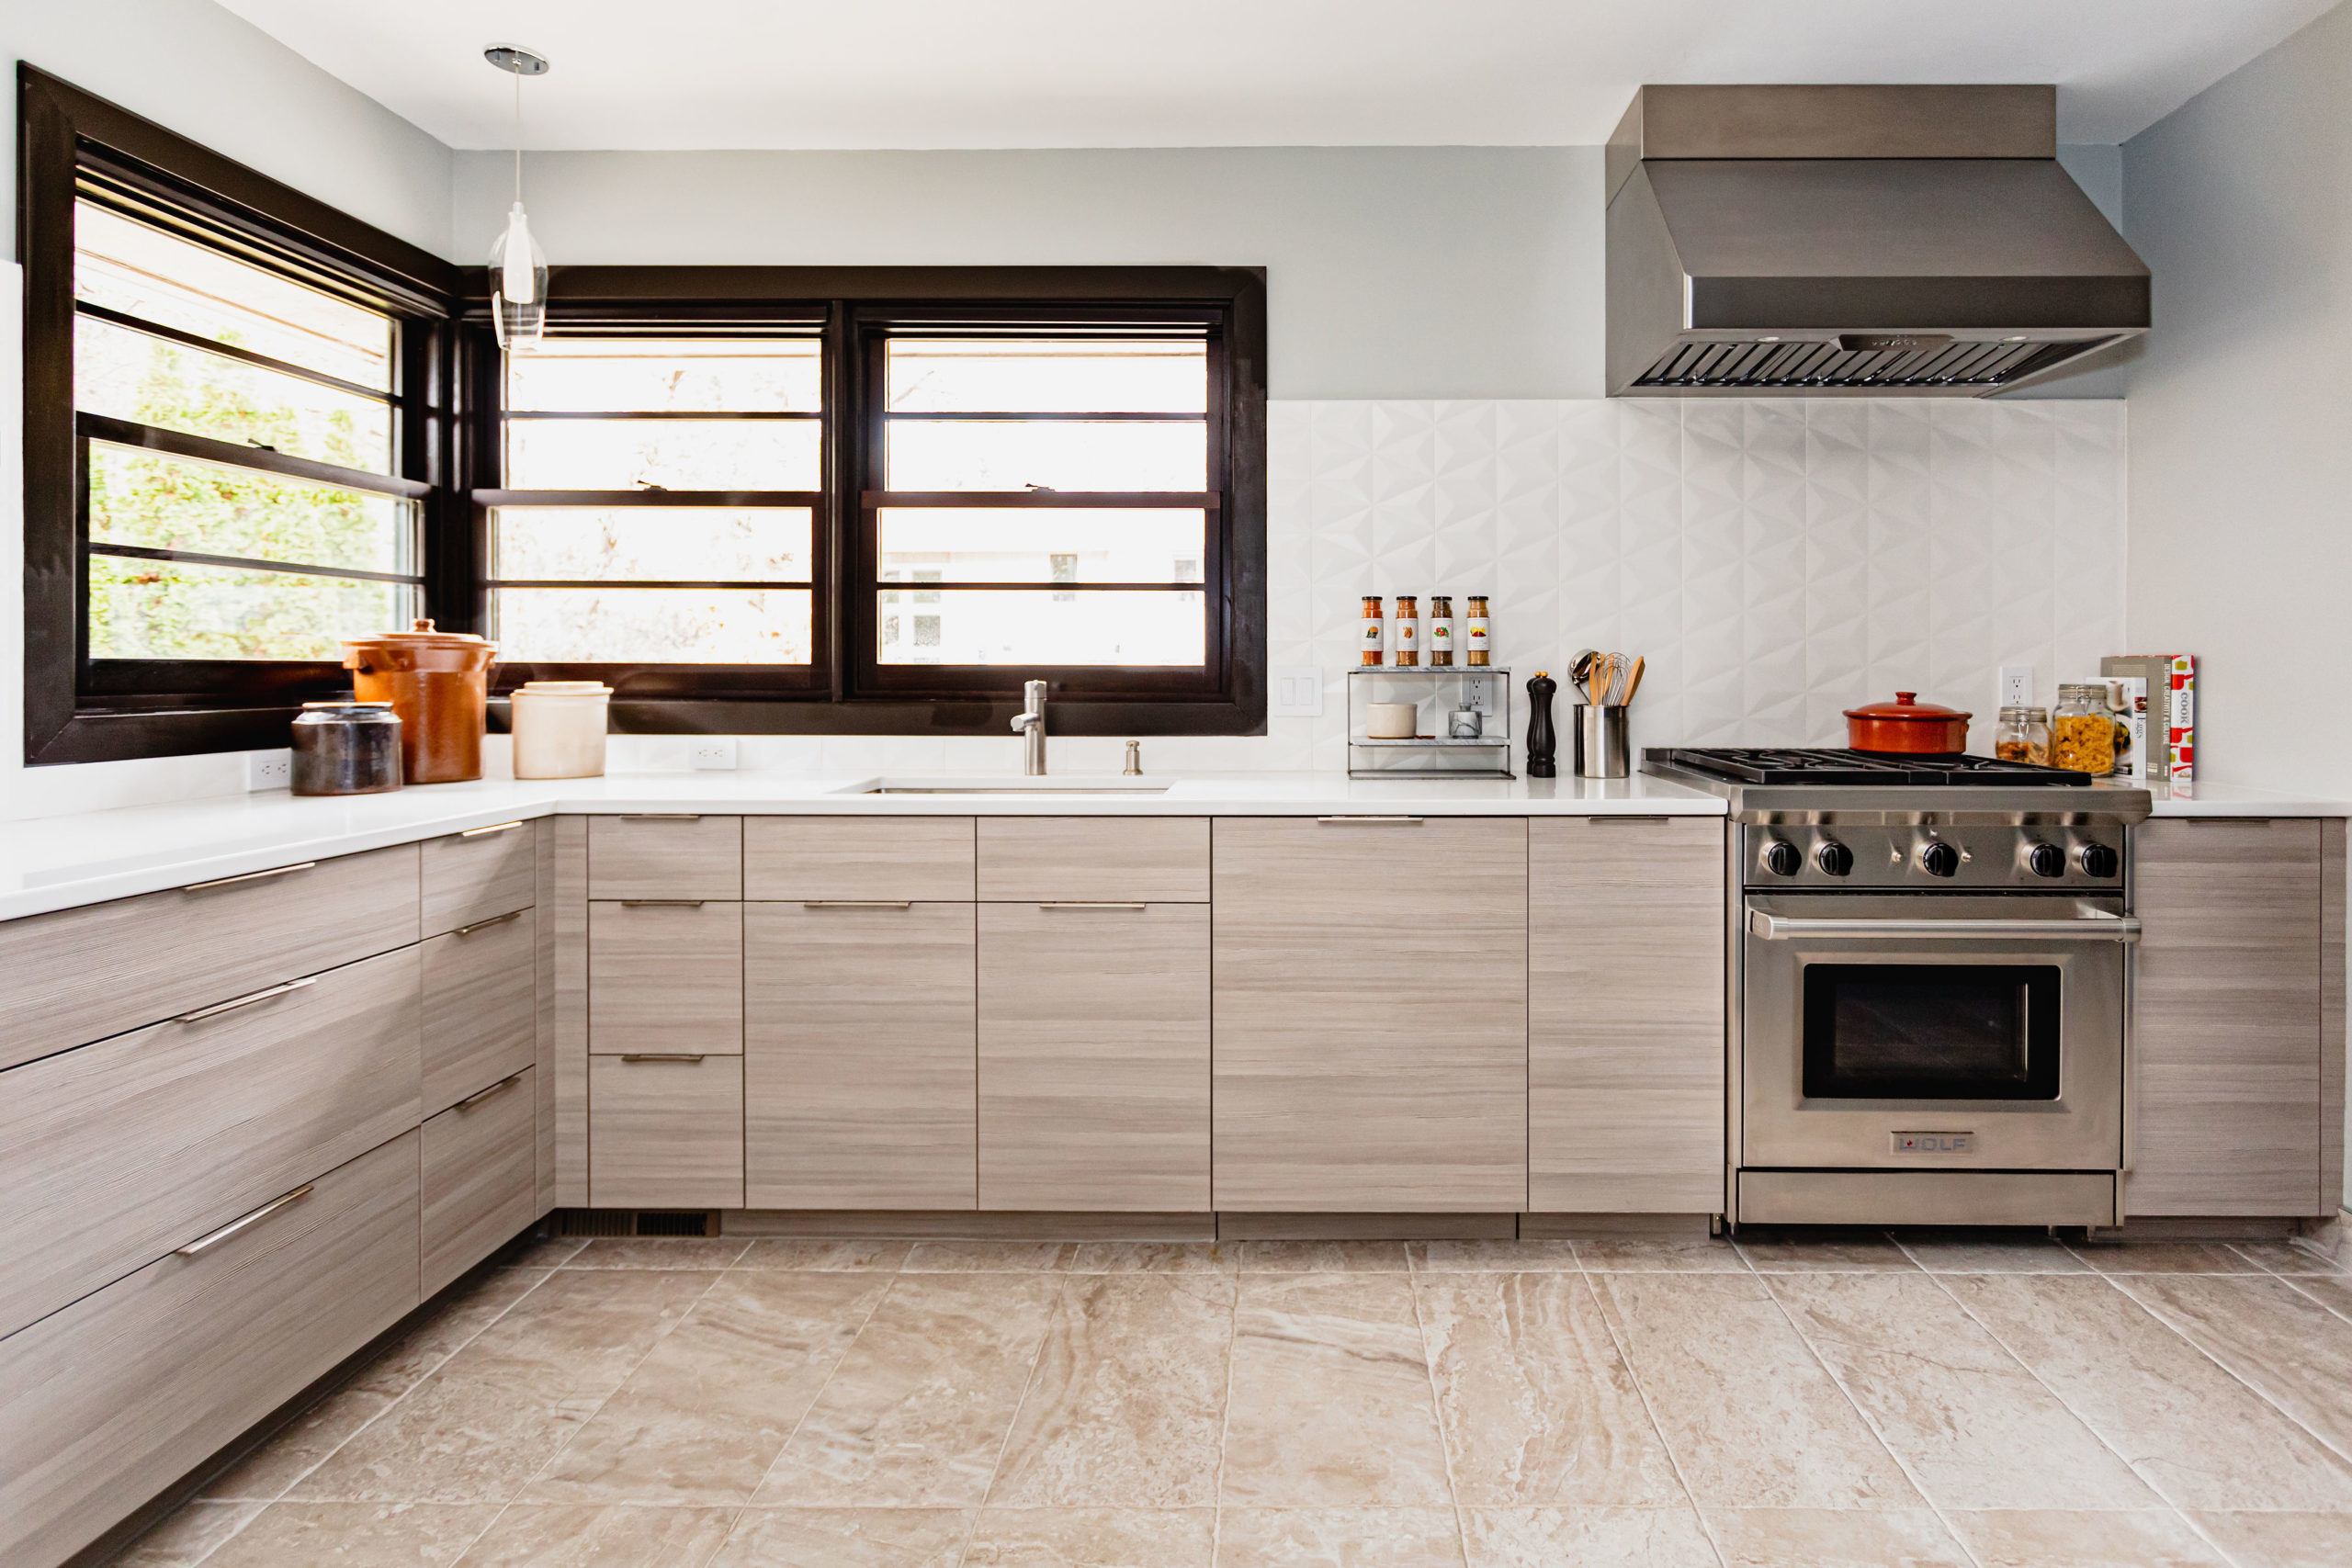 Laminate Kitchen Cabinetry Design Horizontal Textural Grain in Modern Kitchen Design